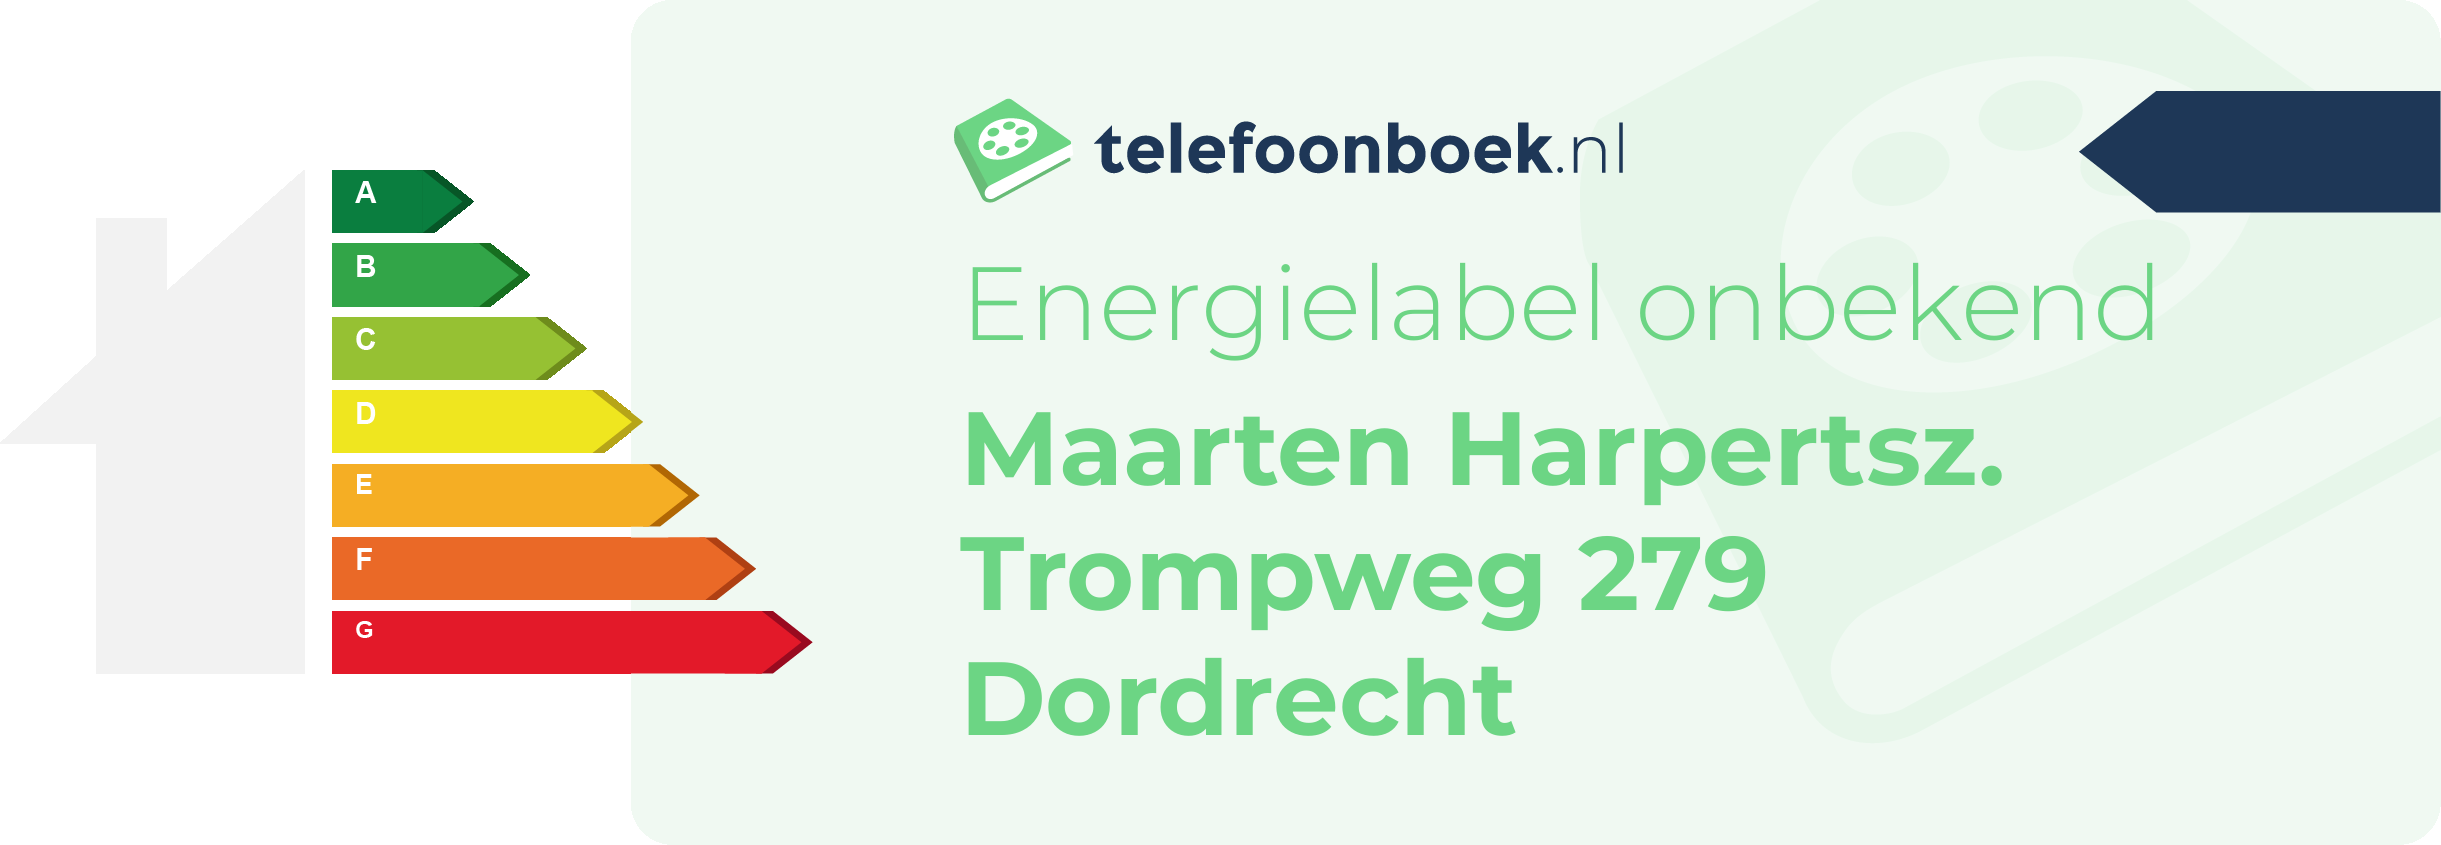 Energielabel Maarten Harpertsz. Trompweg 279 Dordrecht